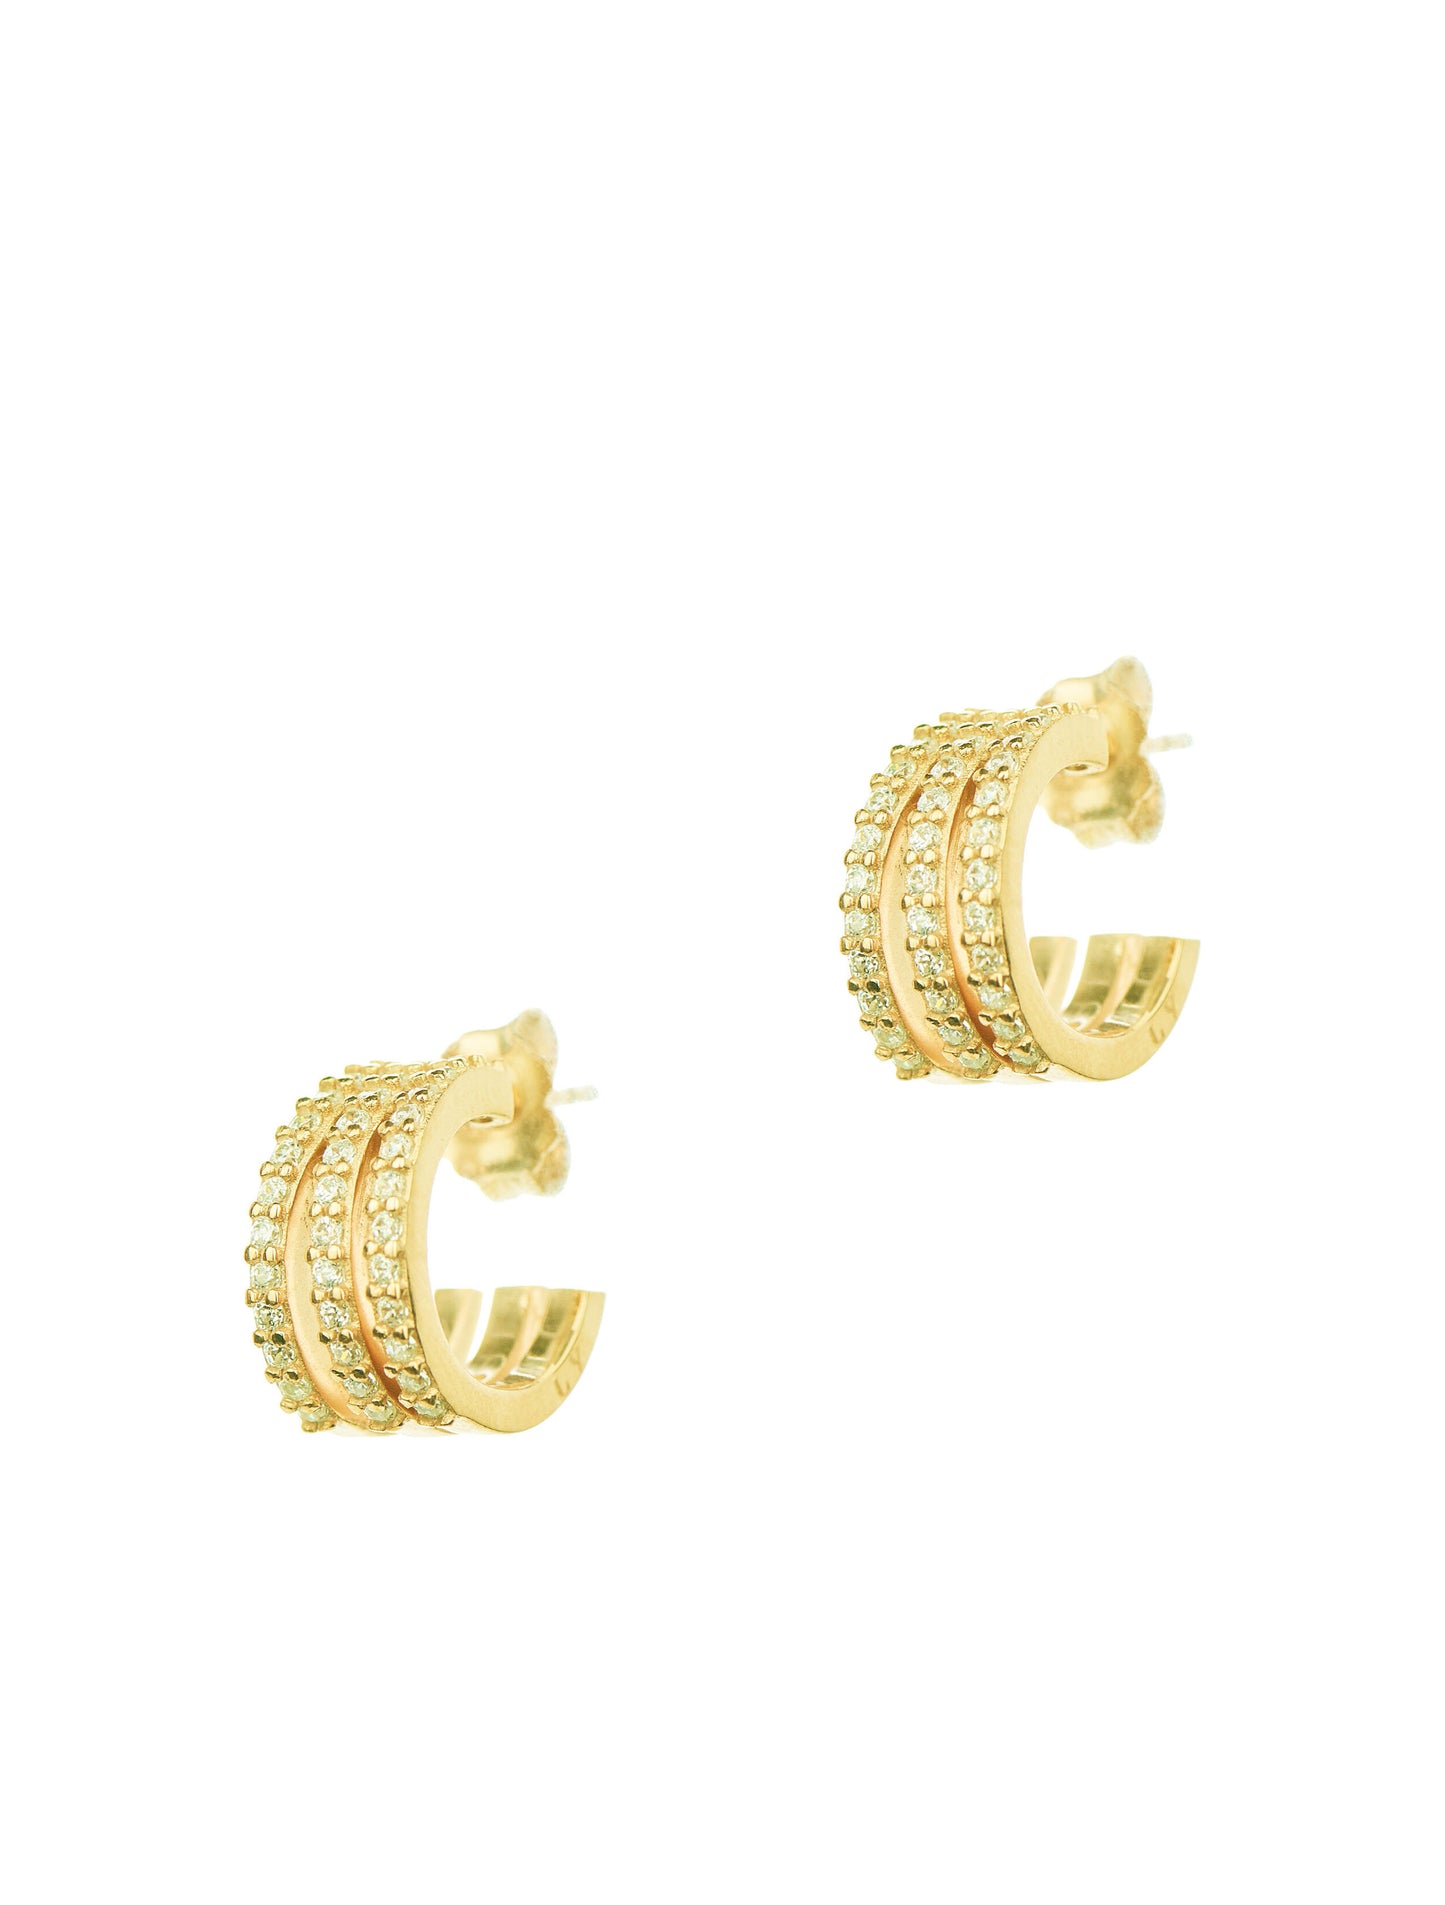 Triple Pair Hoops Earrings - Gold Plated